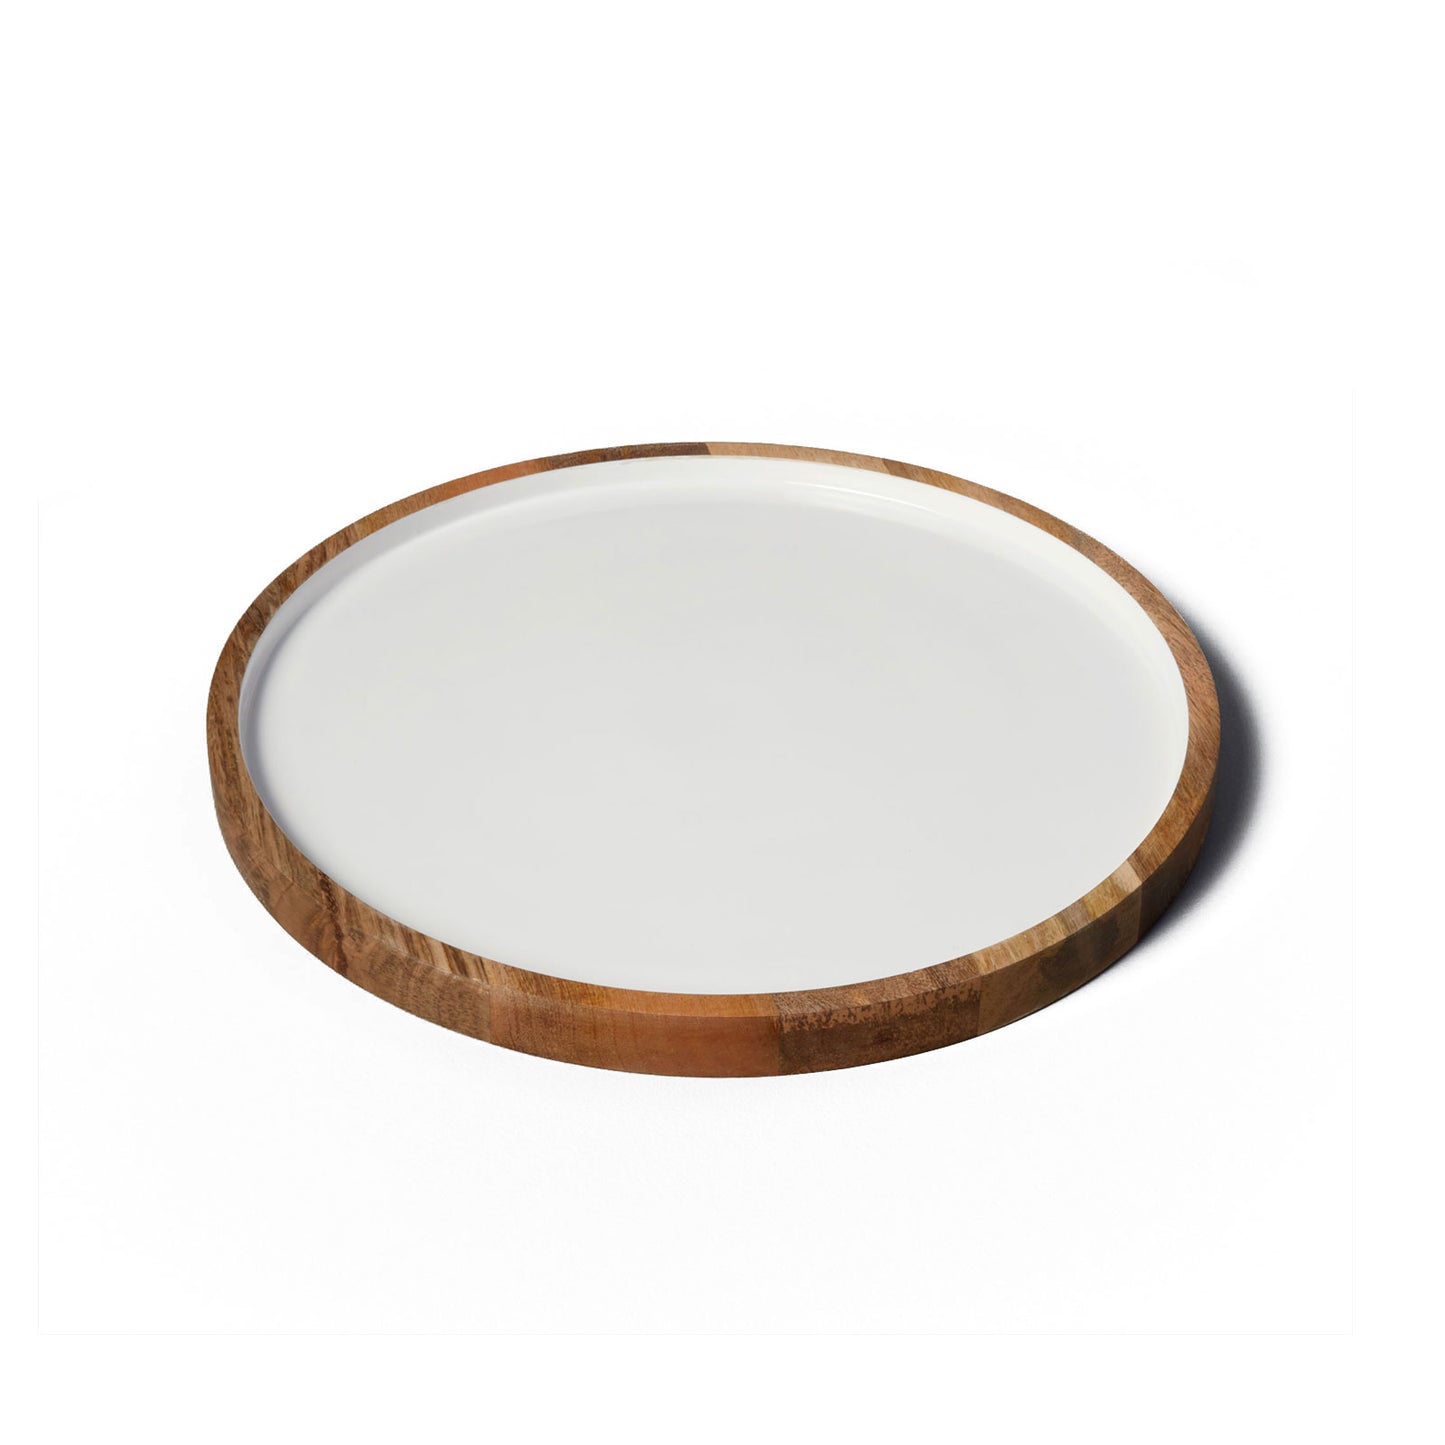 Mango Wood and White Enamel Round Platter